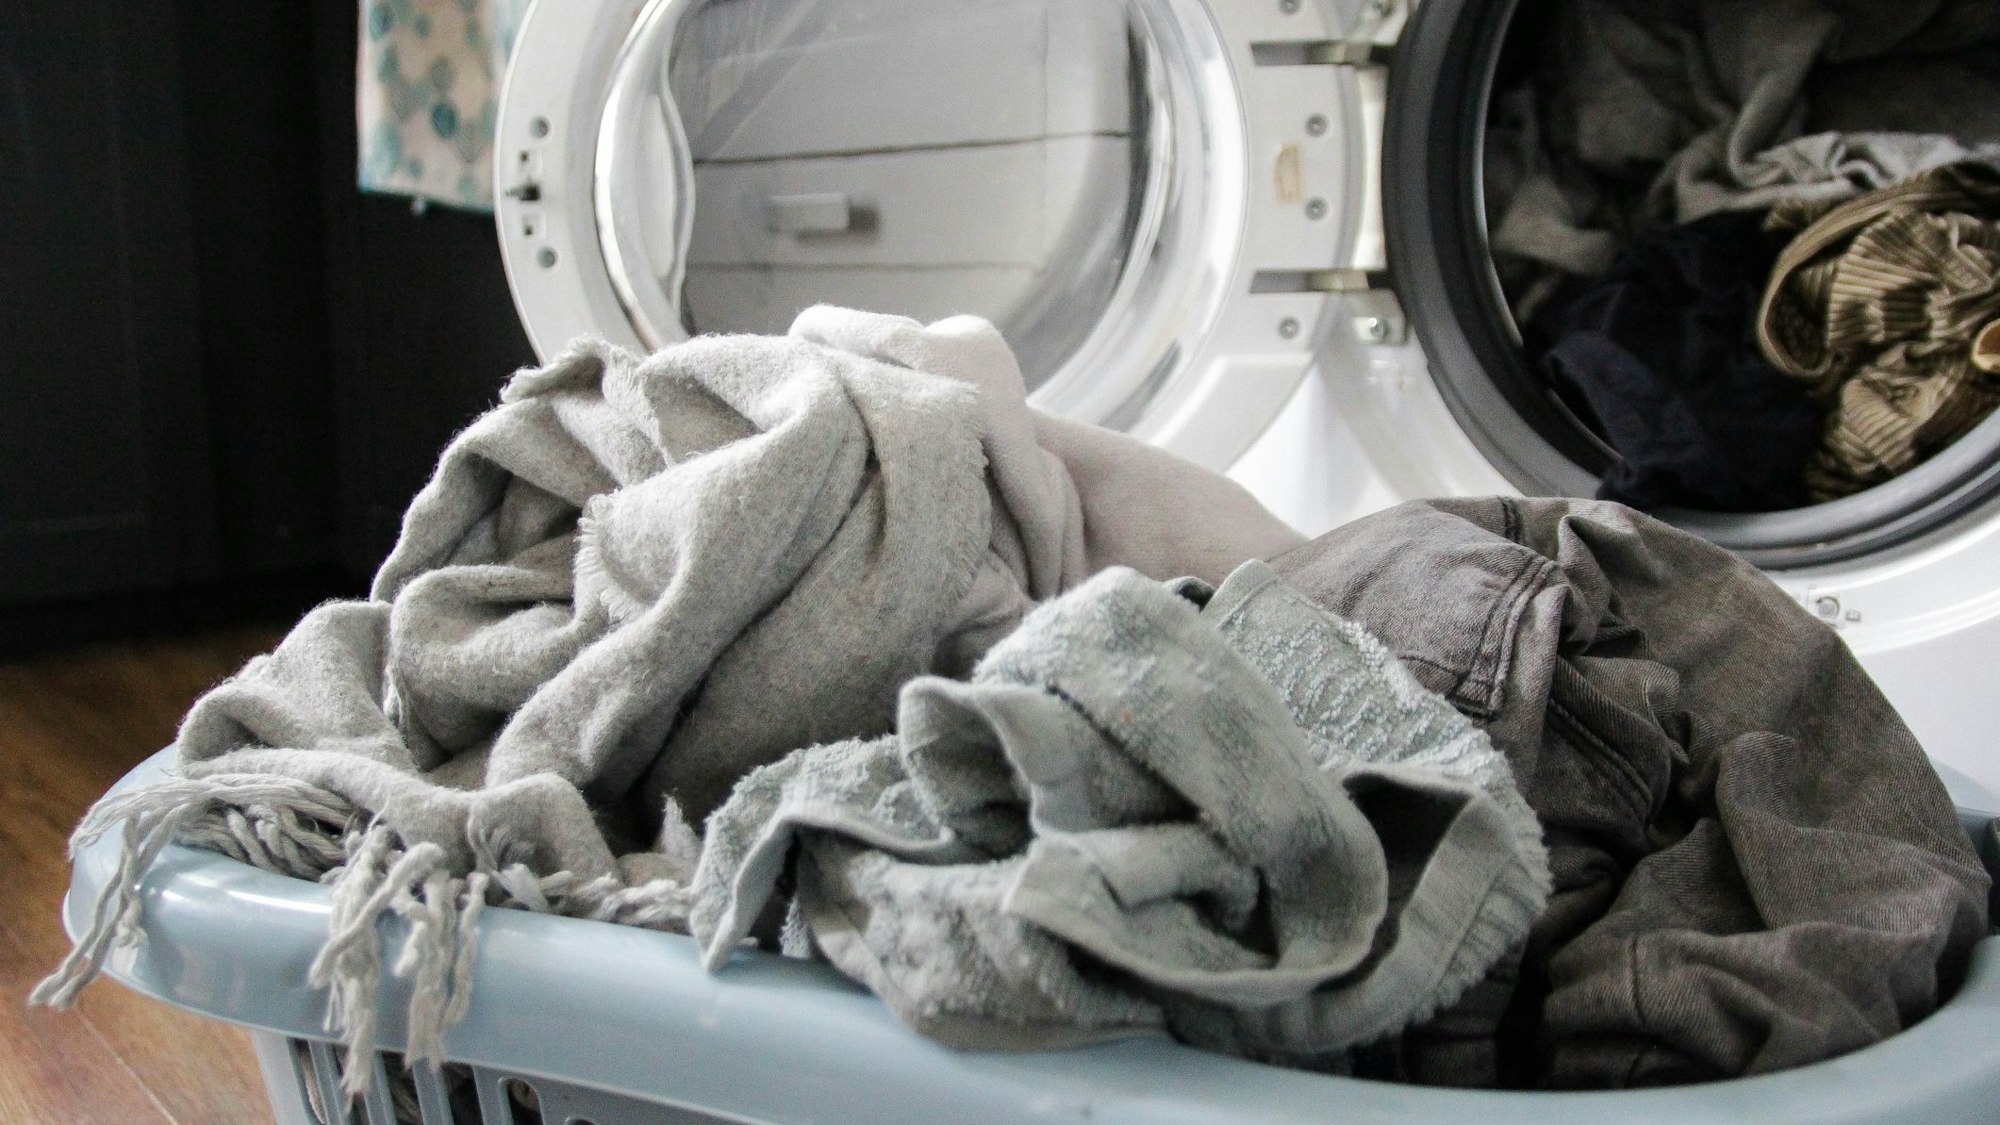 Auf dem Foto sieht man einen Wäschekorb voll mit Wäsche vor einer offenen Waschmaschine.